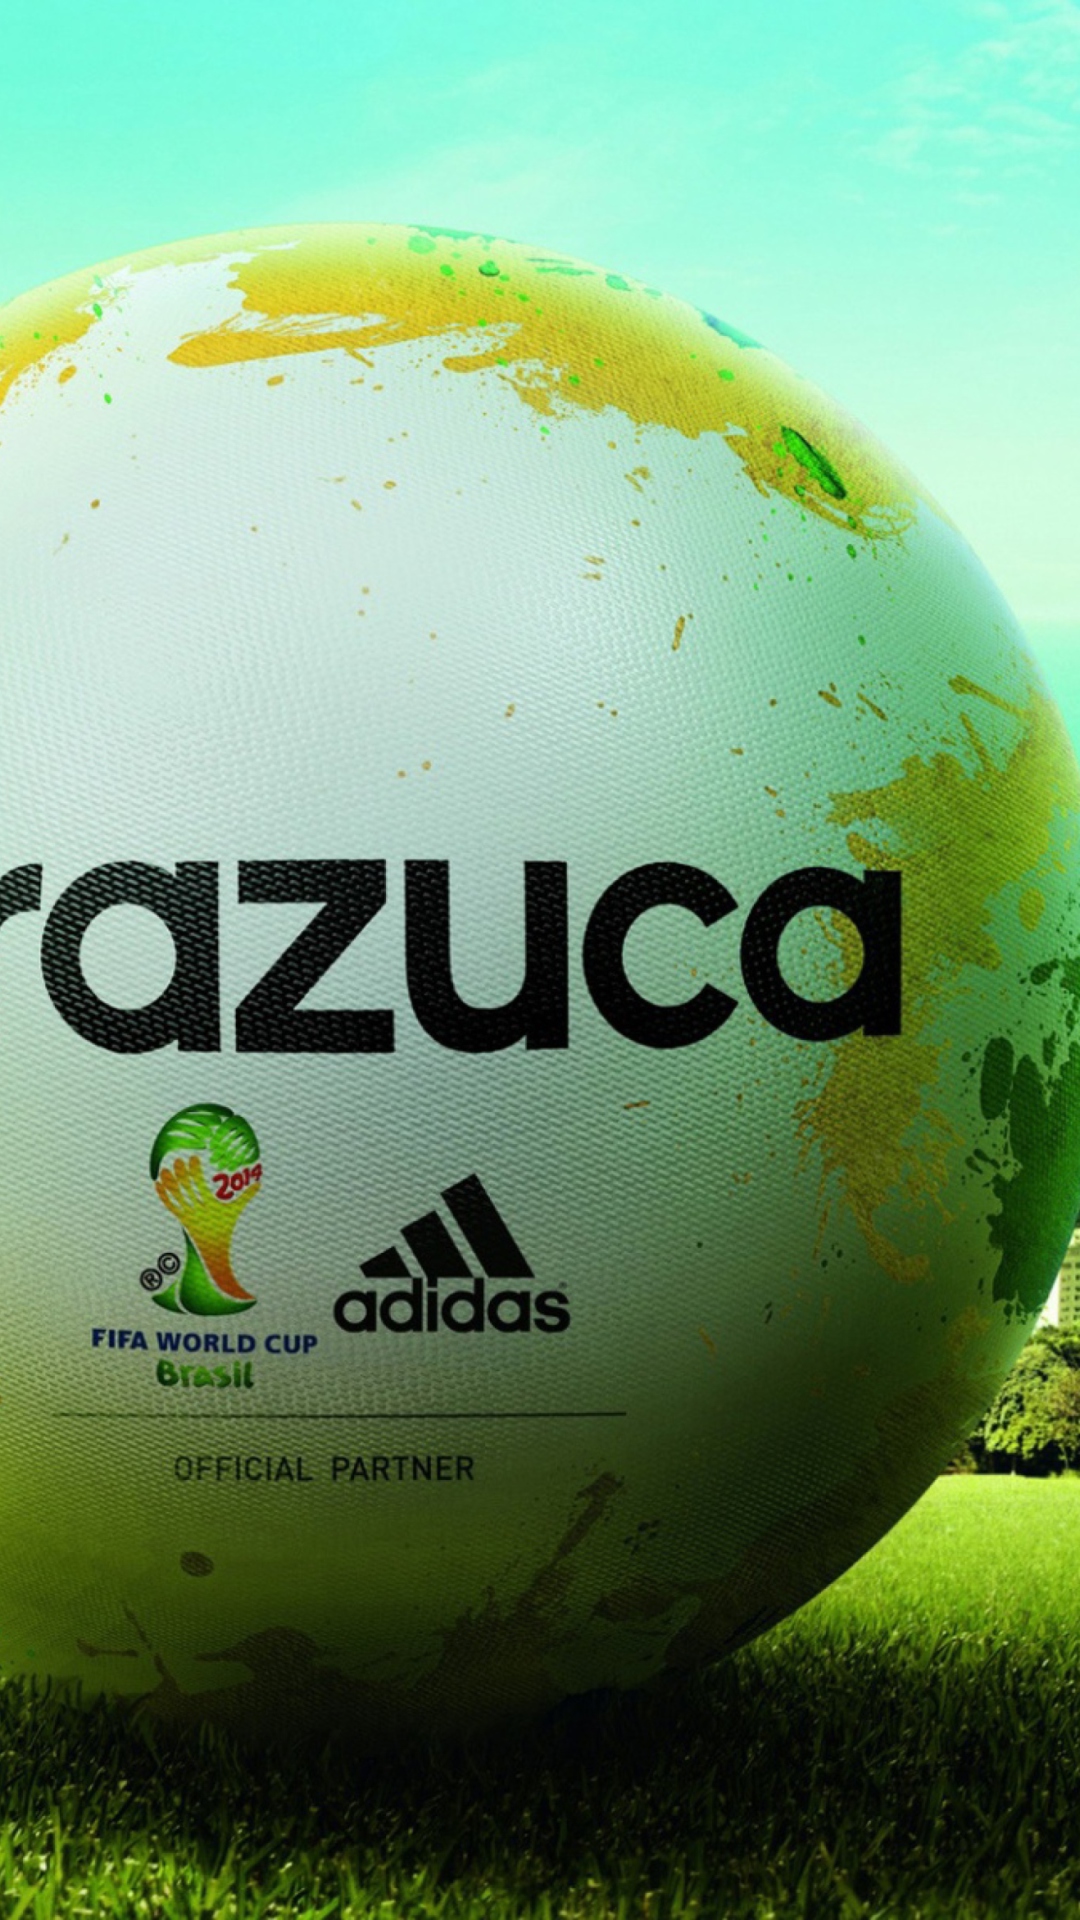 Обои Adidas Brazuca Match Ball FIFA World Cup 2014 1080x1920